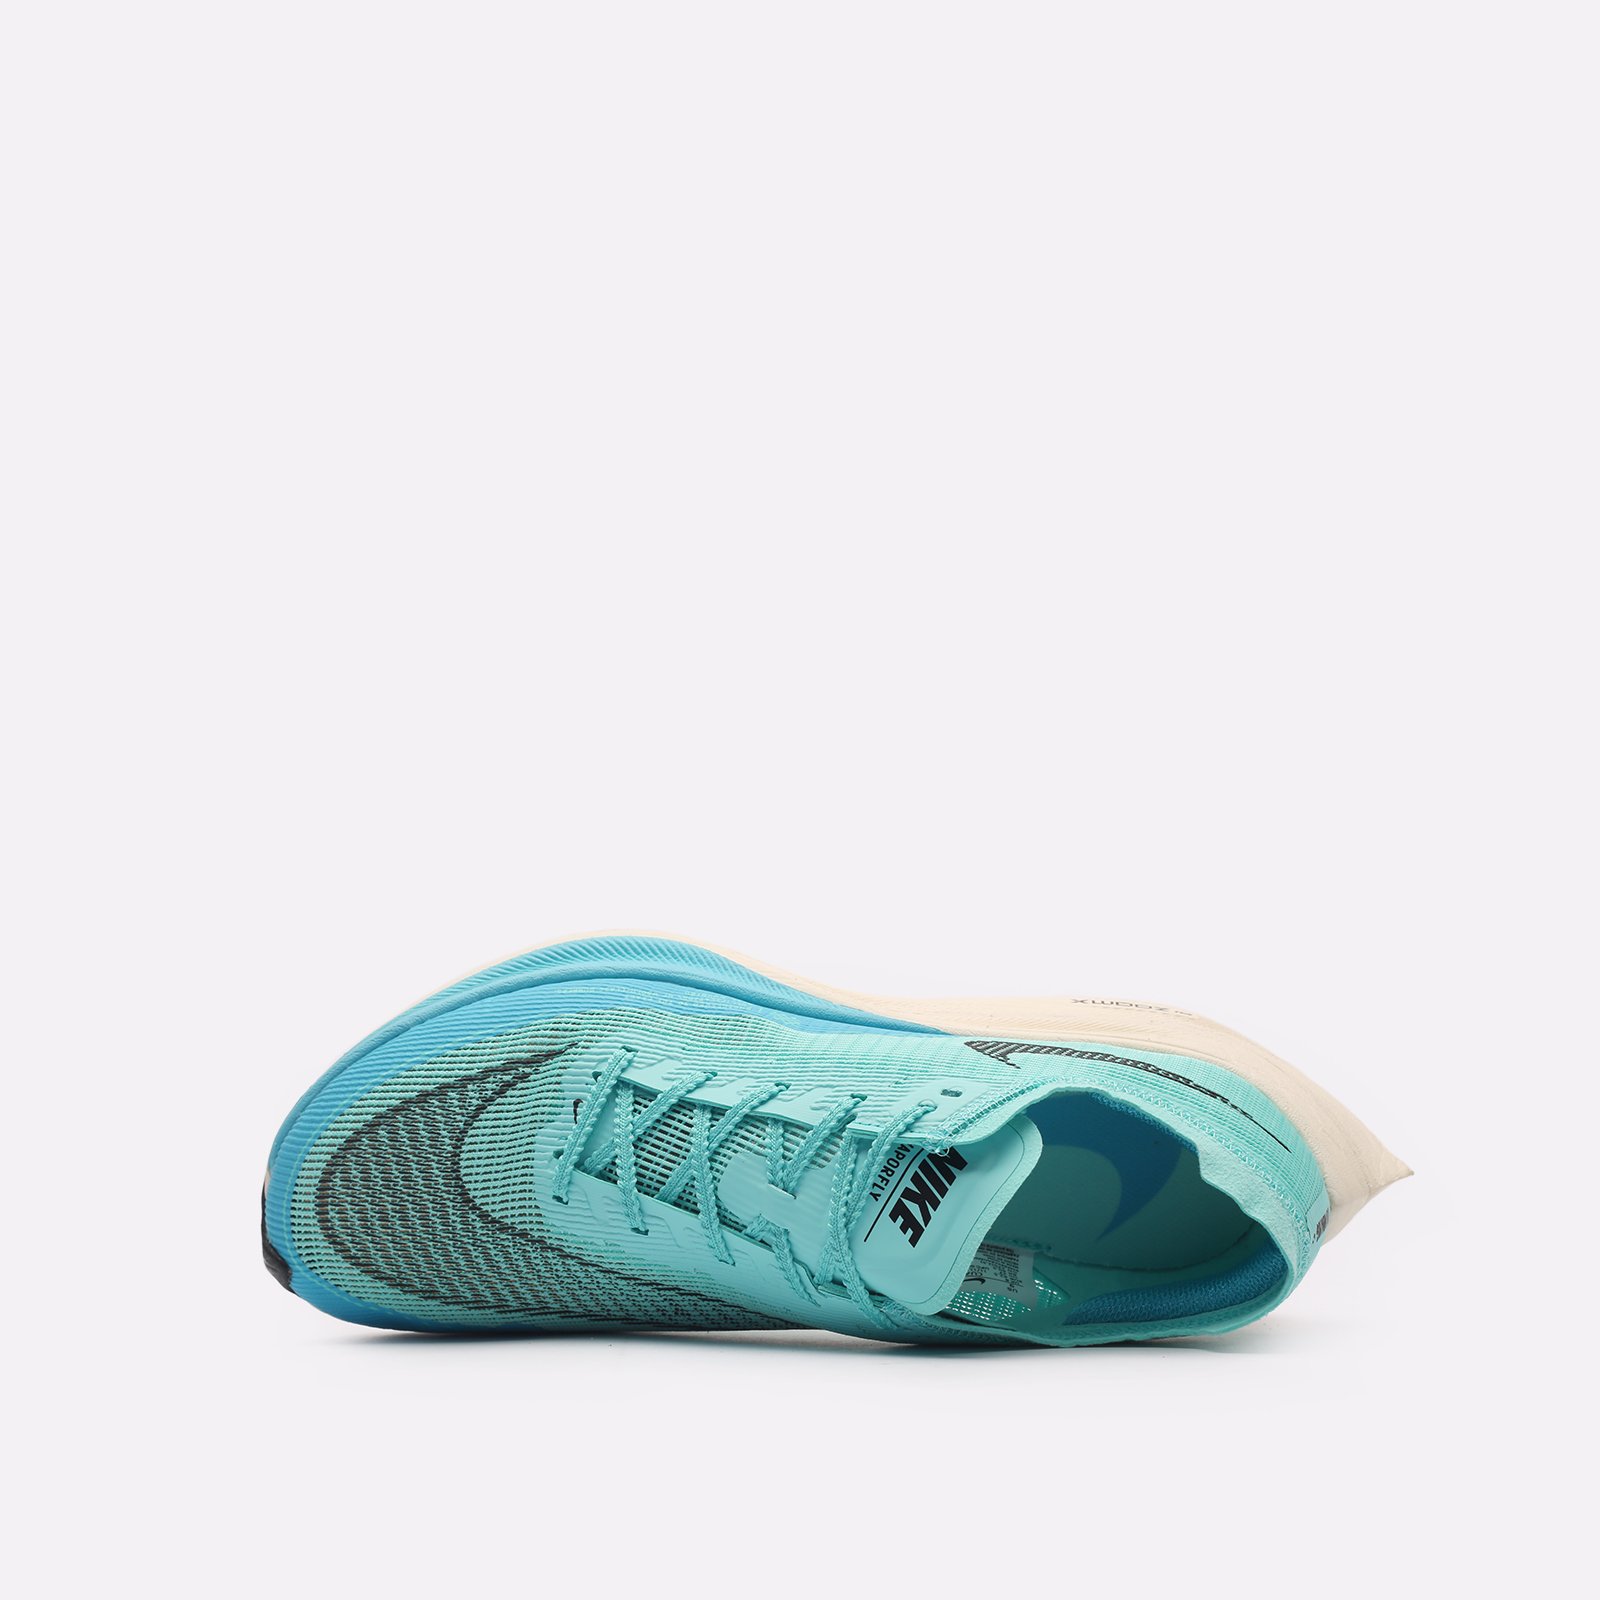 мужские кроссовки Nike ZoomX Vaporfly  (CU4111-300)  - цена, описание, фото 6